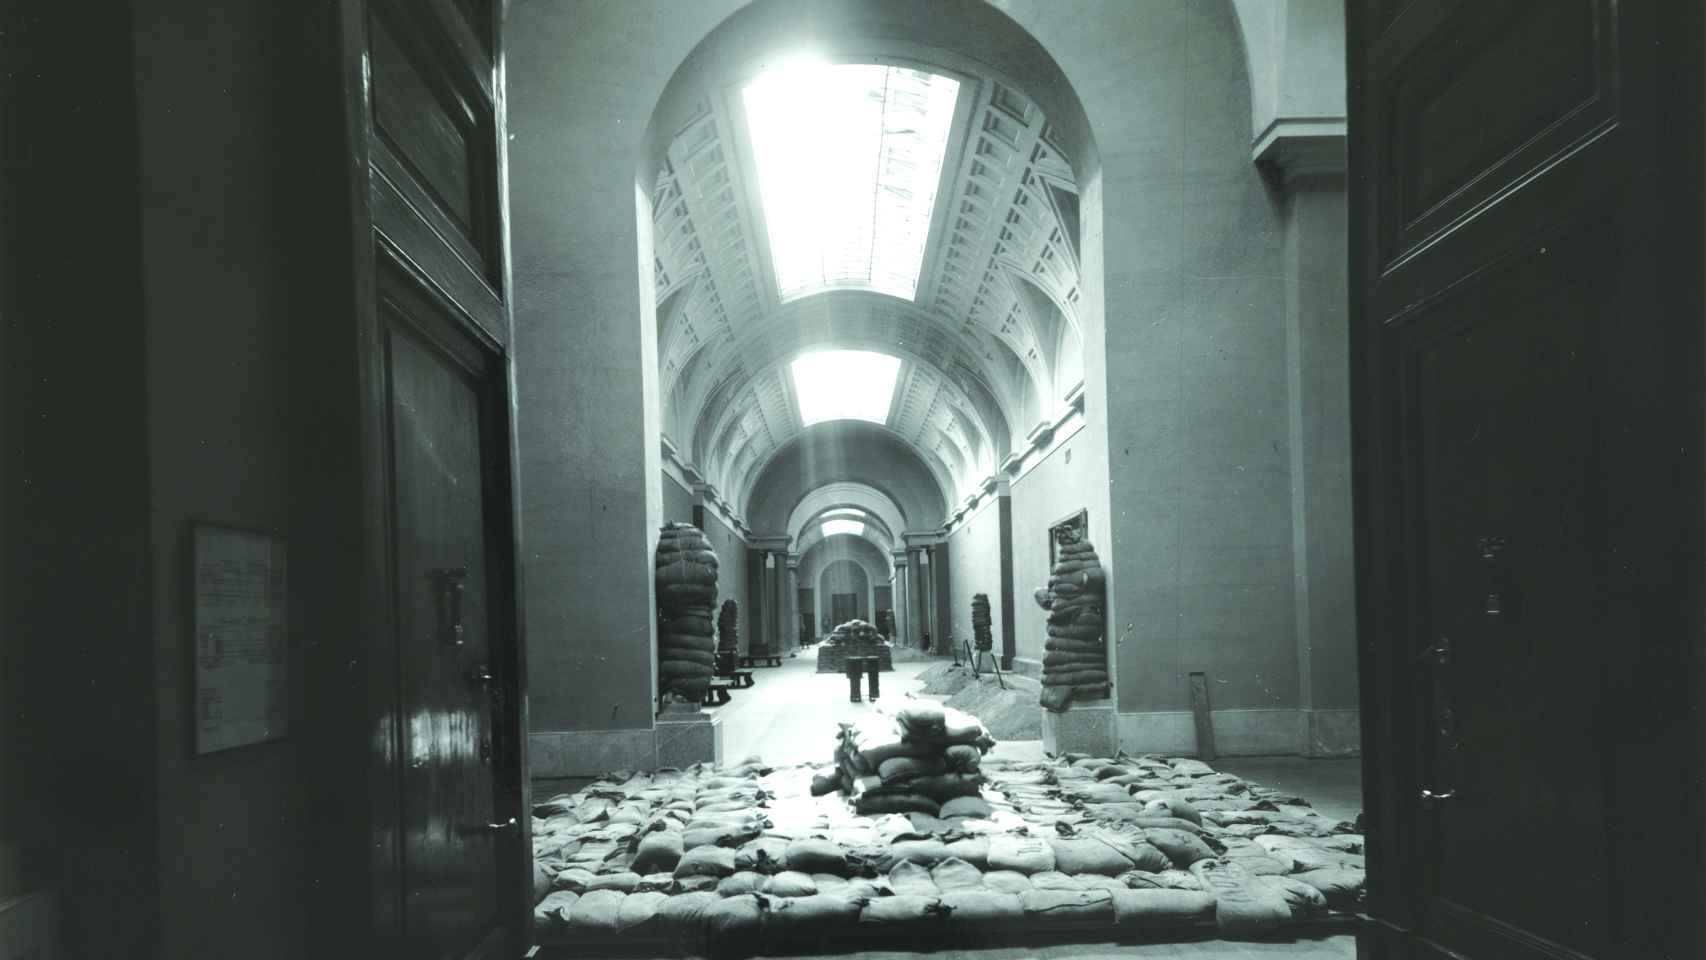 Fotografía de Hauser y Menet: Galería central del Museo del Prado durante la Guerra Civil, 1936-39. Archivo del Museo del Prado